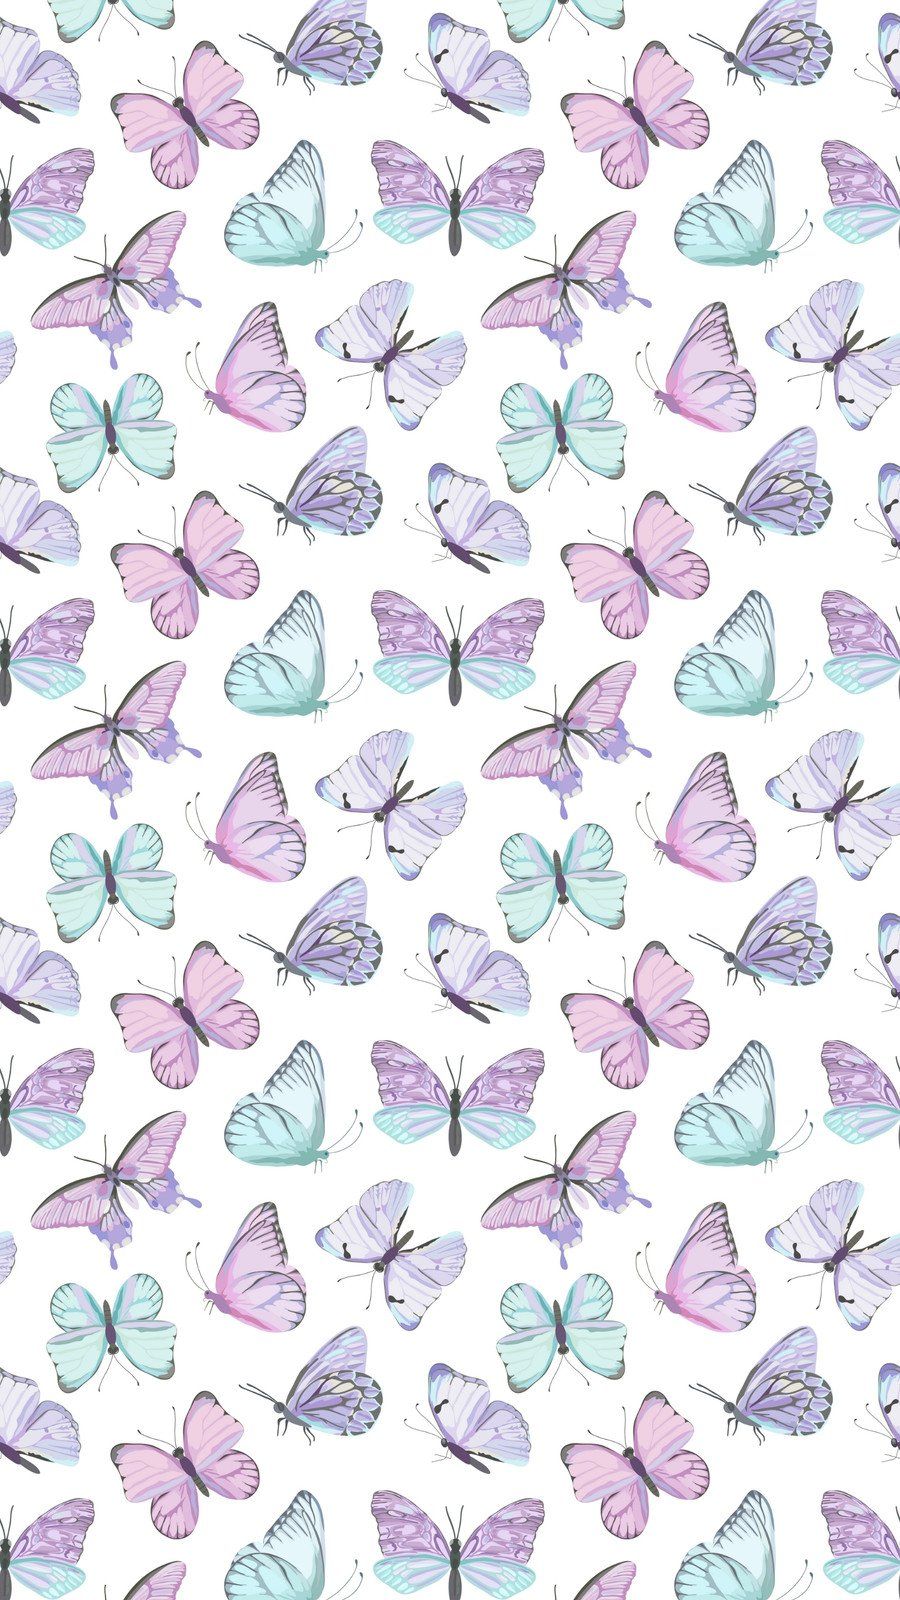 Purple Butterfly Wallpapers - 4k, HD Purple Butterfly Backgrounds on ...